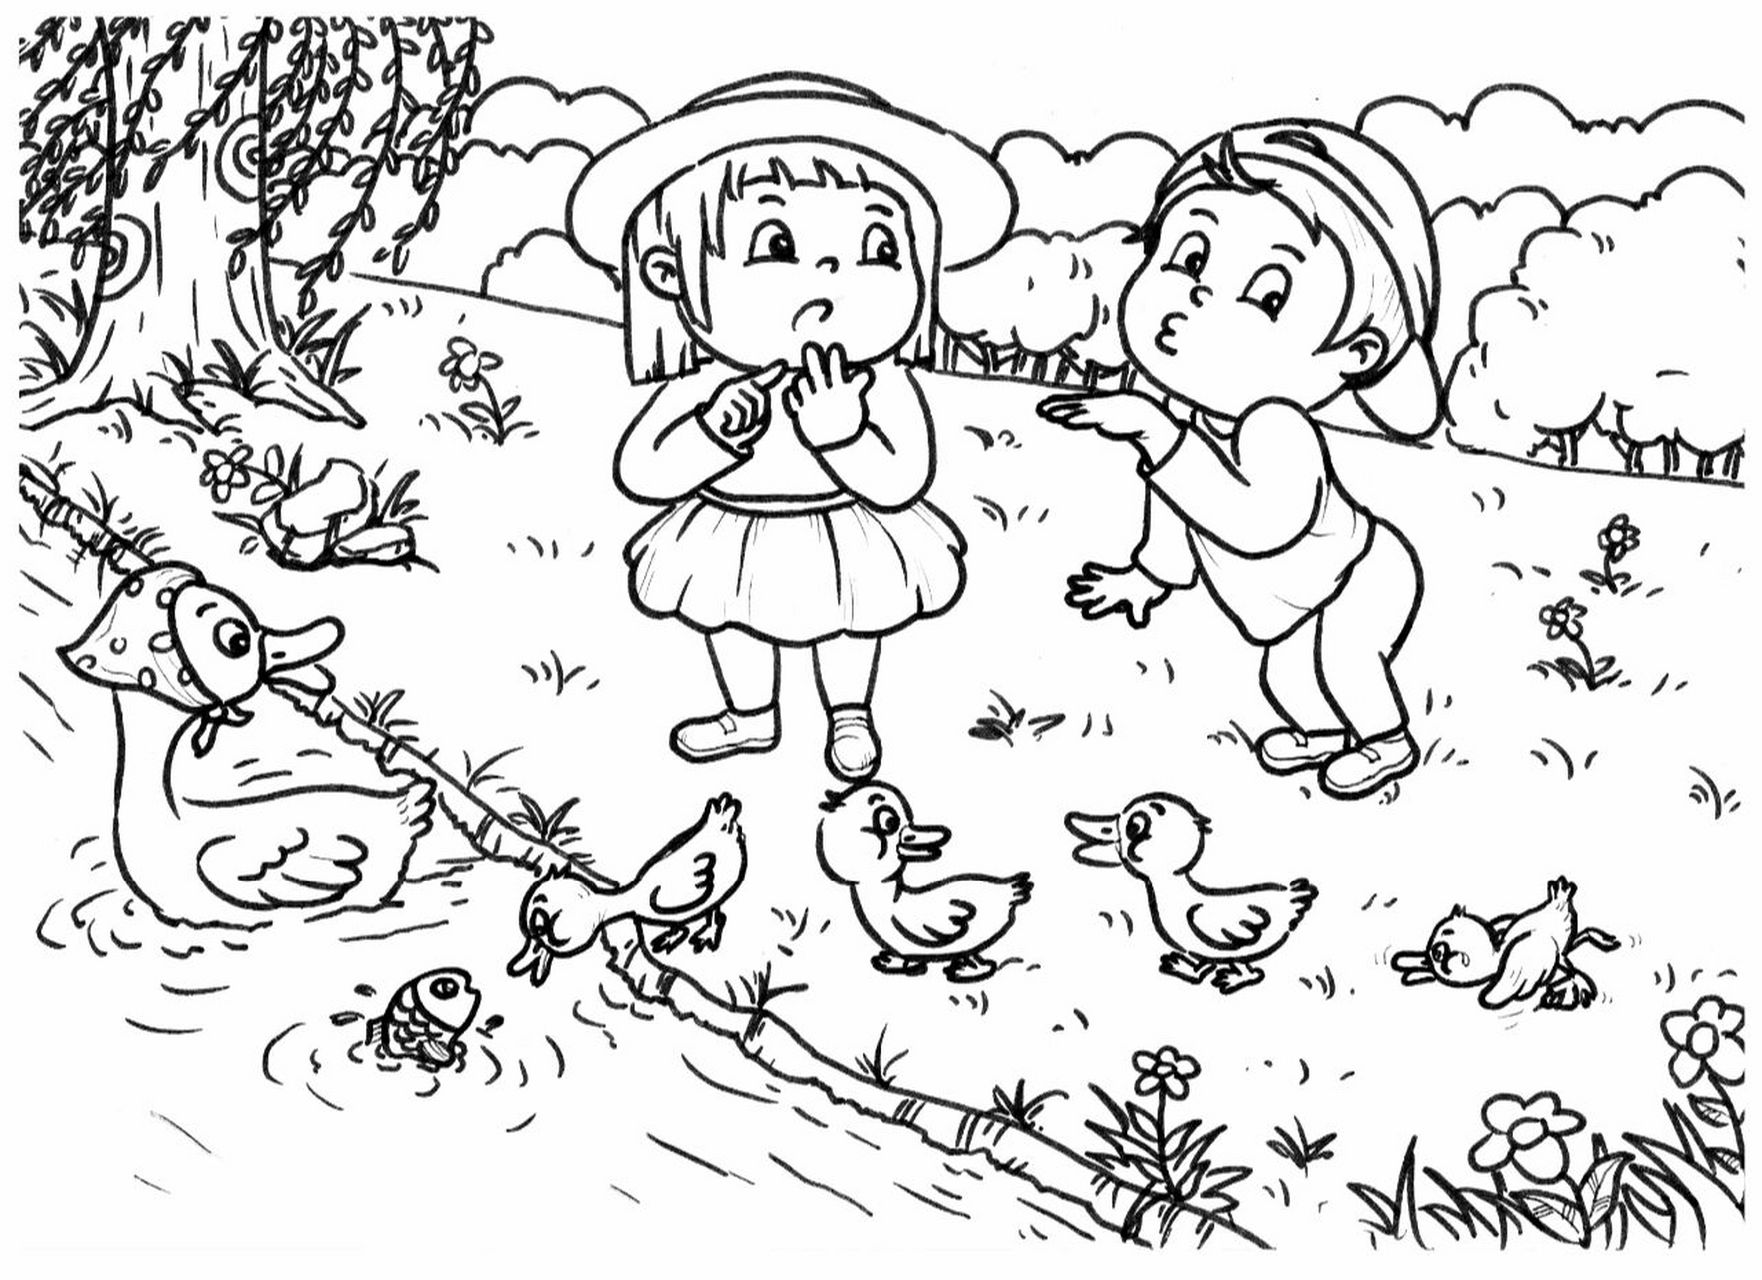 小学幼师考编简笔画《数鸭子》 小女孩:你个逗比,又害人家数错啦!